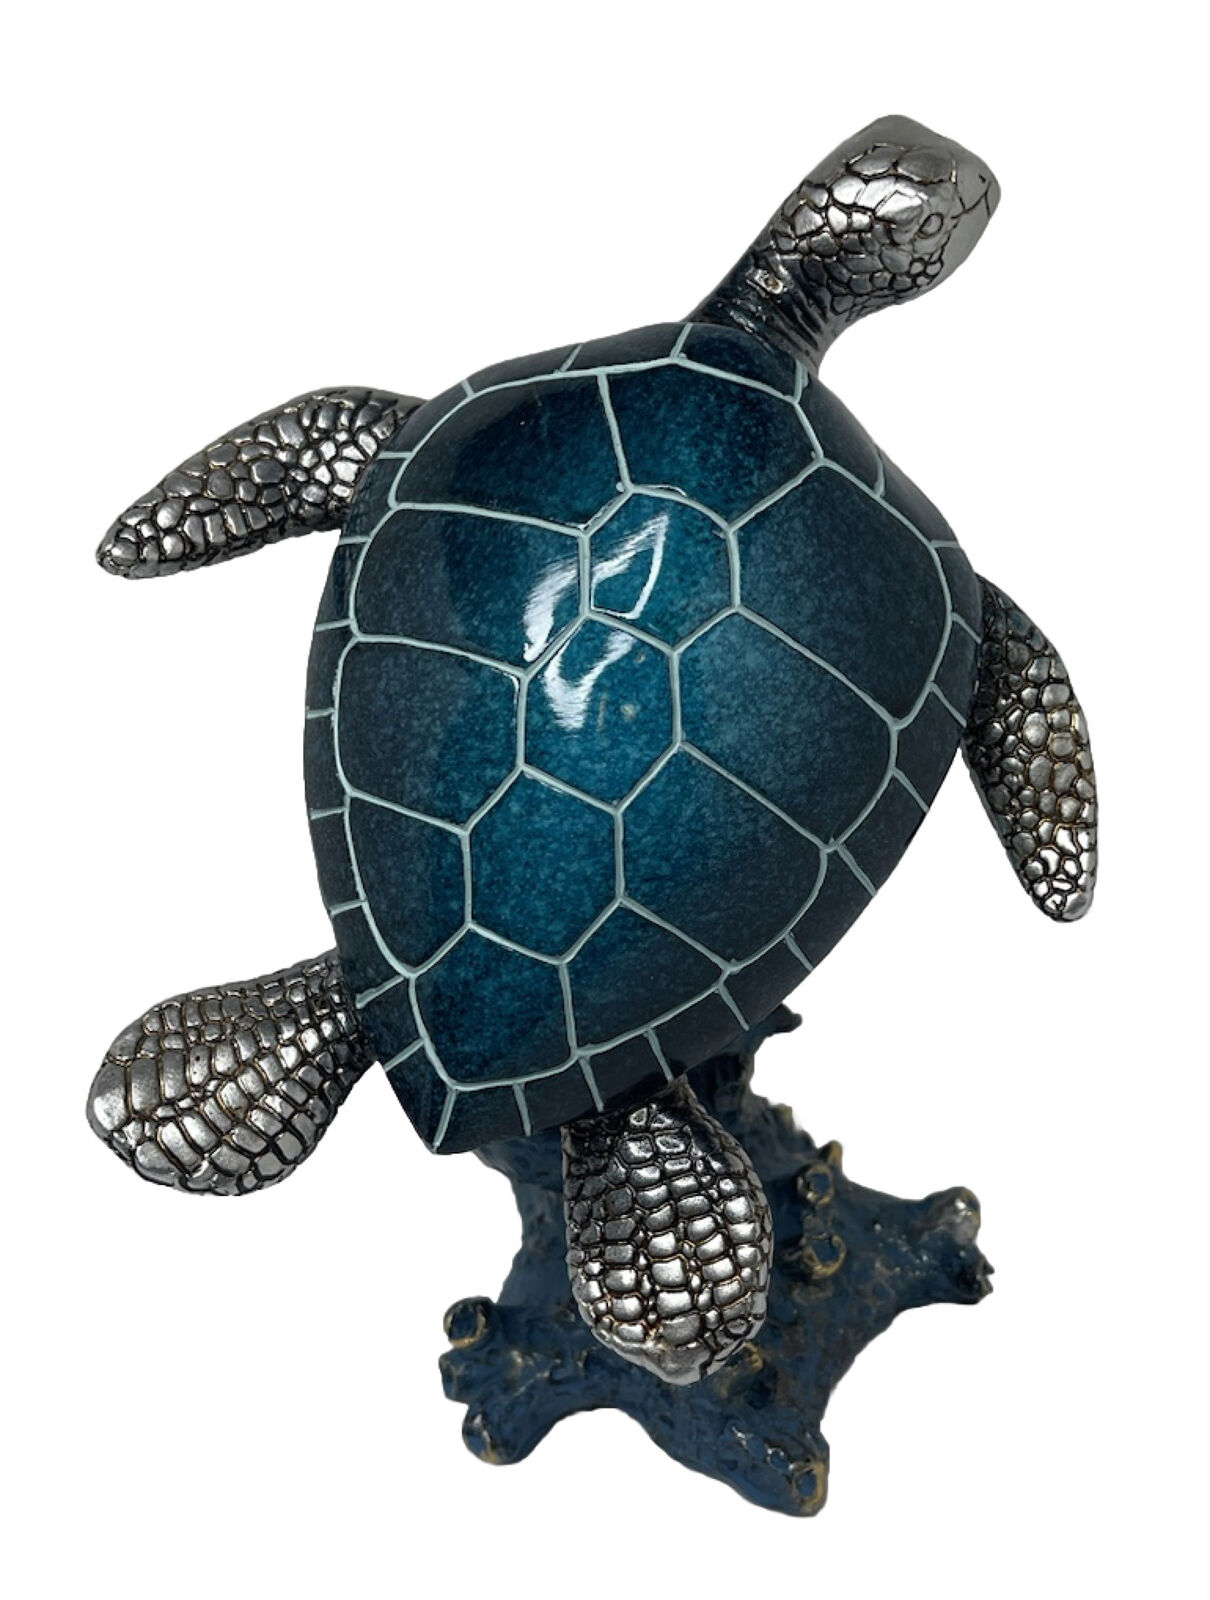 Decorative Ceramic & Blue Leatherback Sea Turtle on Coral Figurine 7”x 6.5”